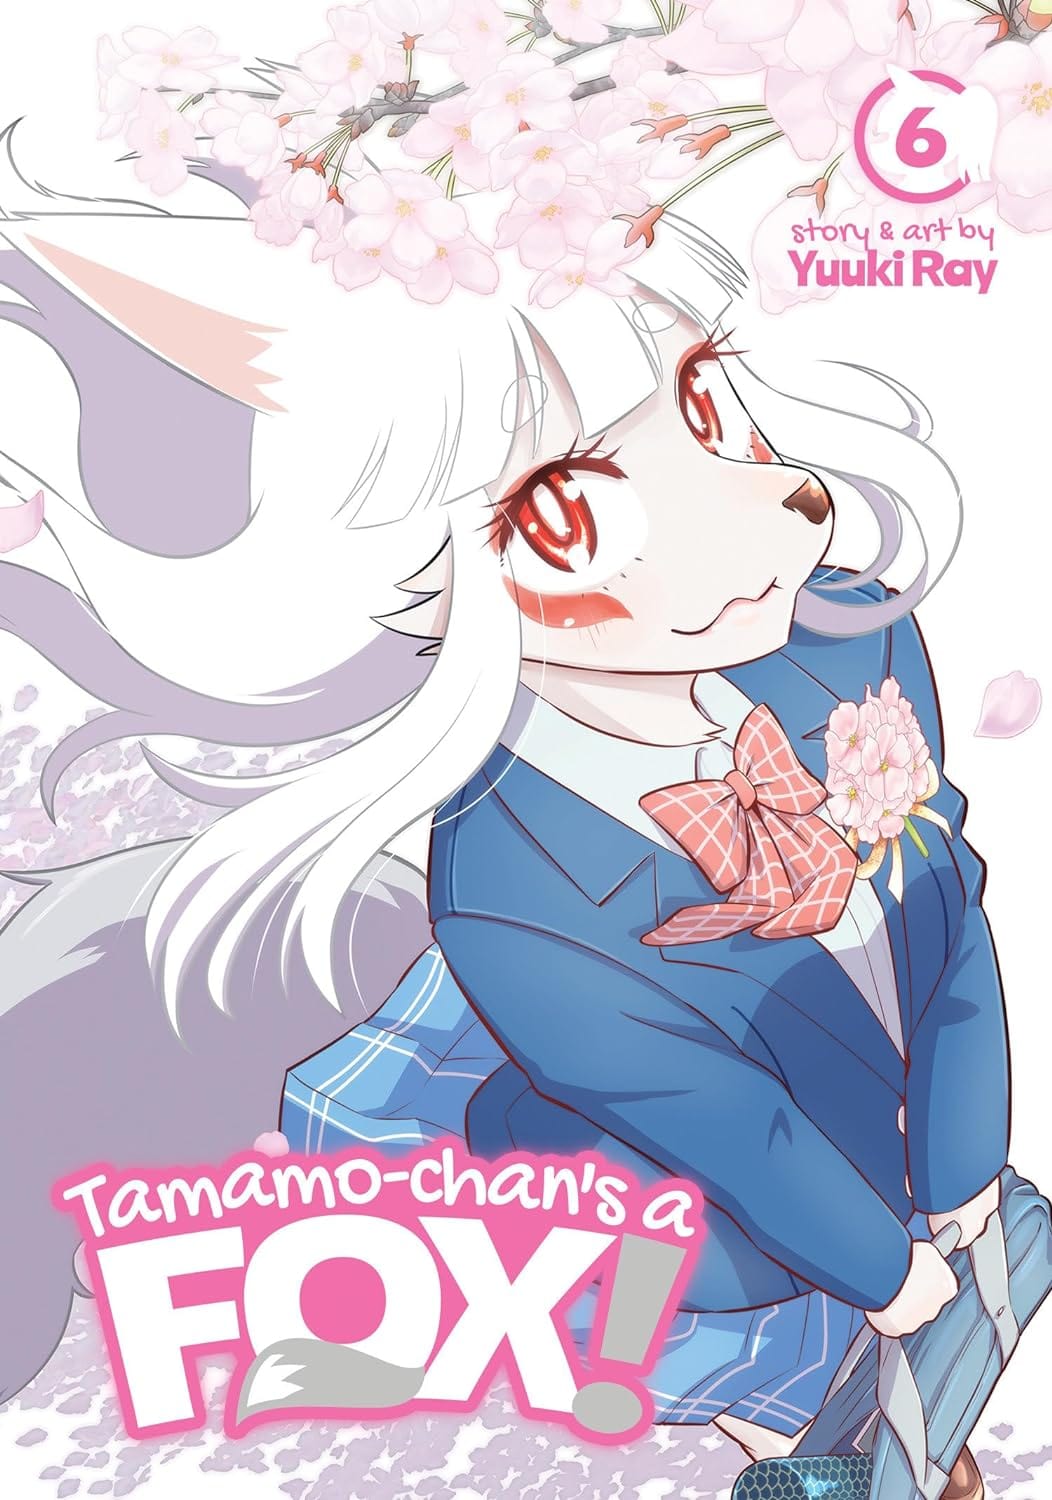 Tamamo Chans A Fox GN Vol 06 (Of 6)